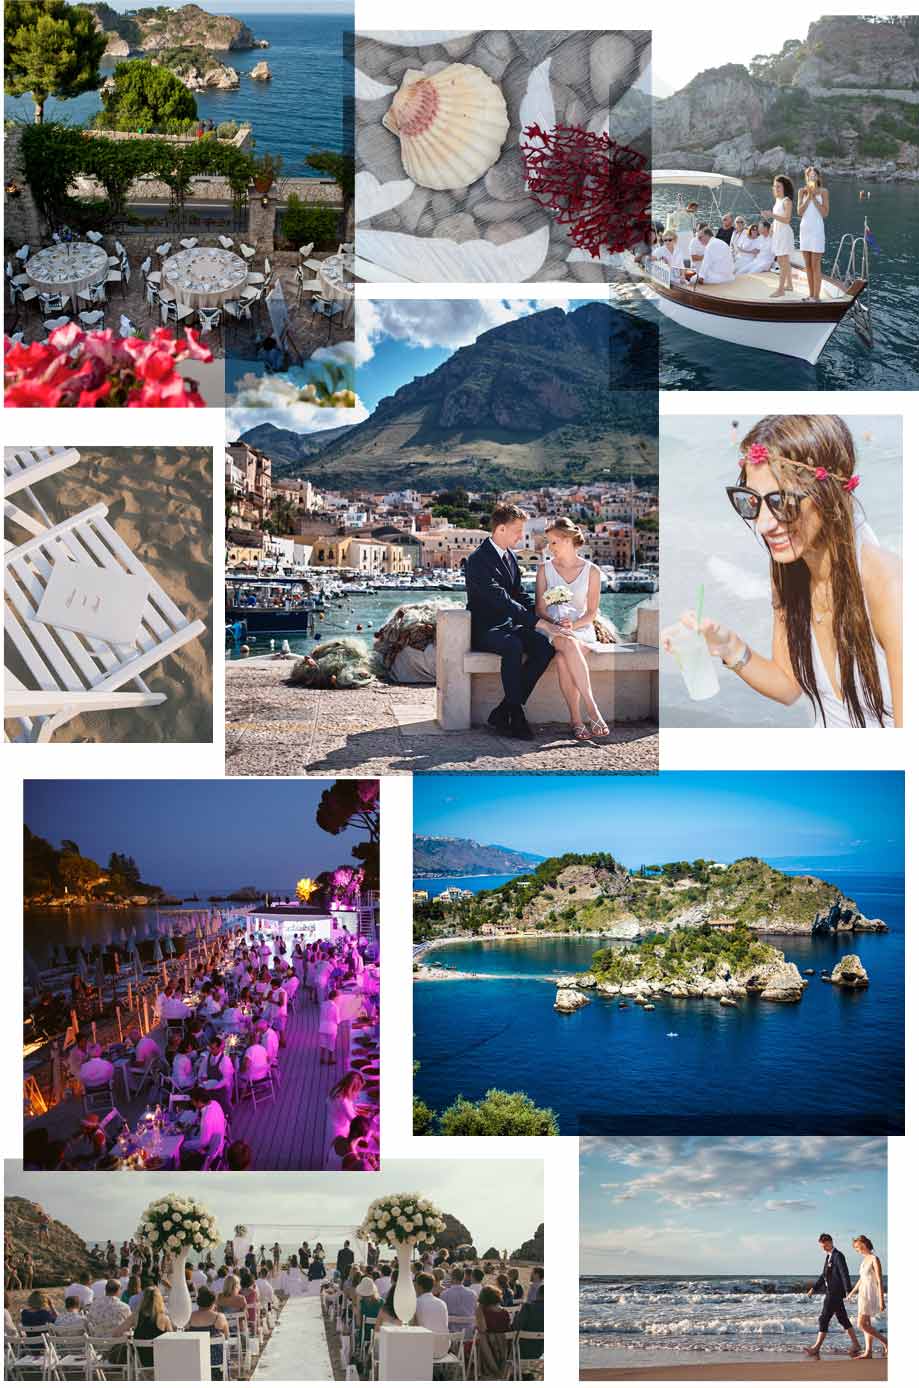 Wedding in Sicily Mediterranean waves